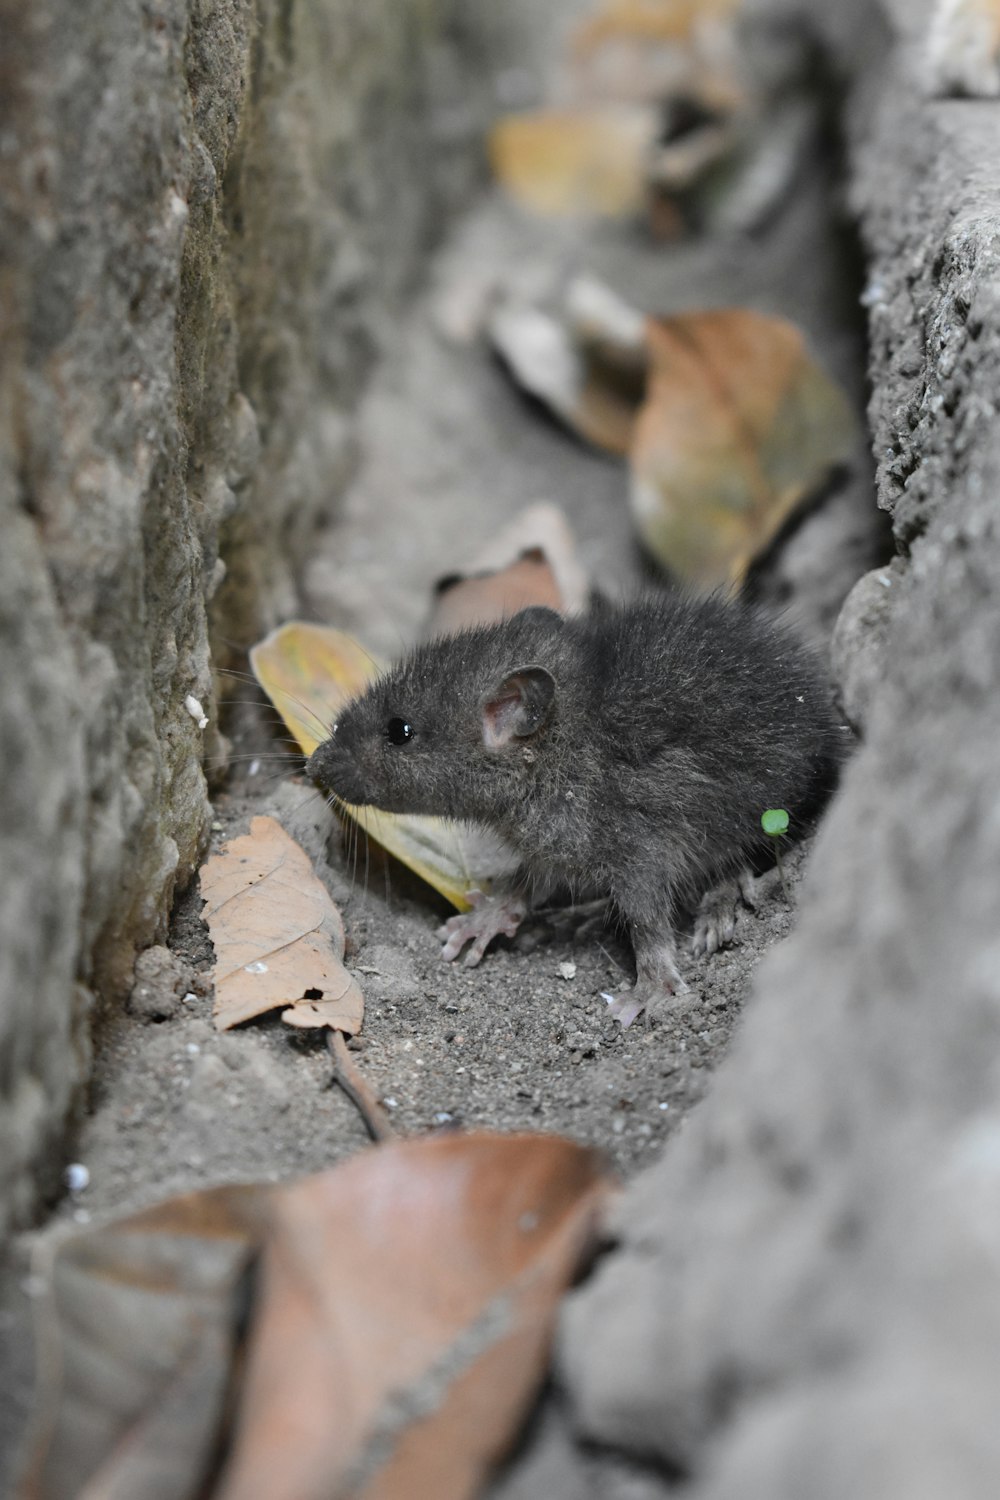 black mouse on gray concrete pavement